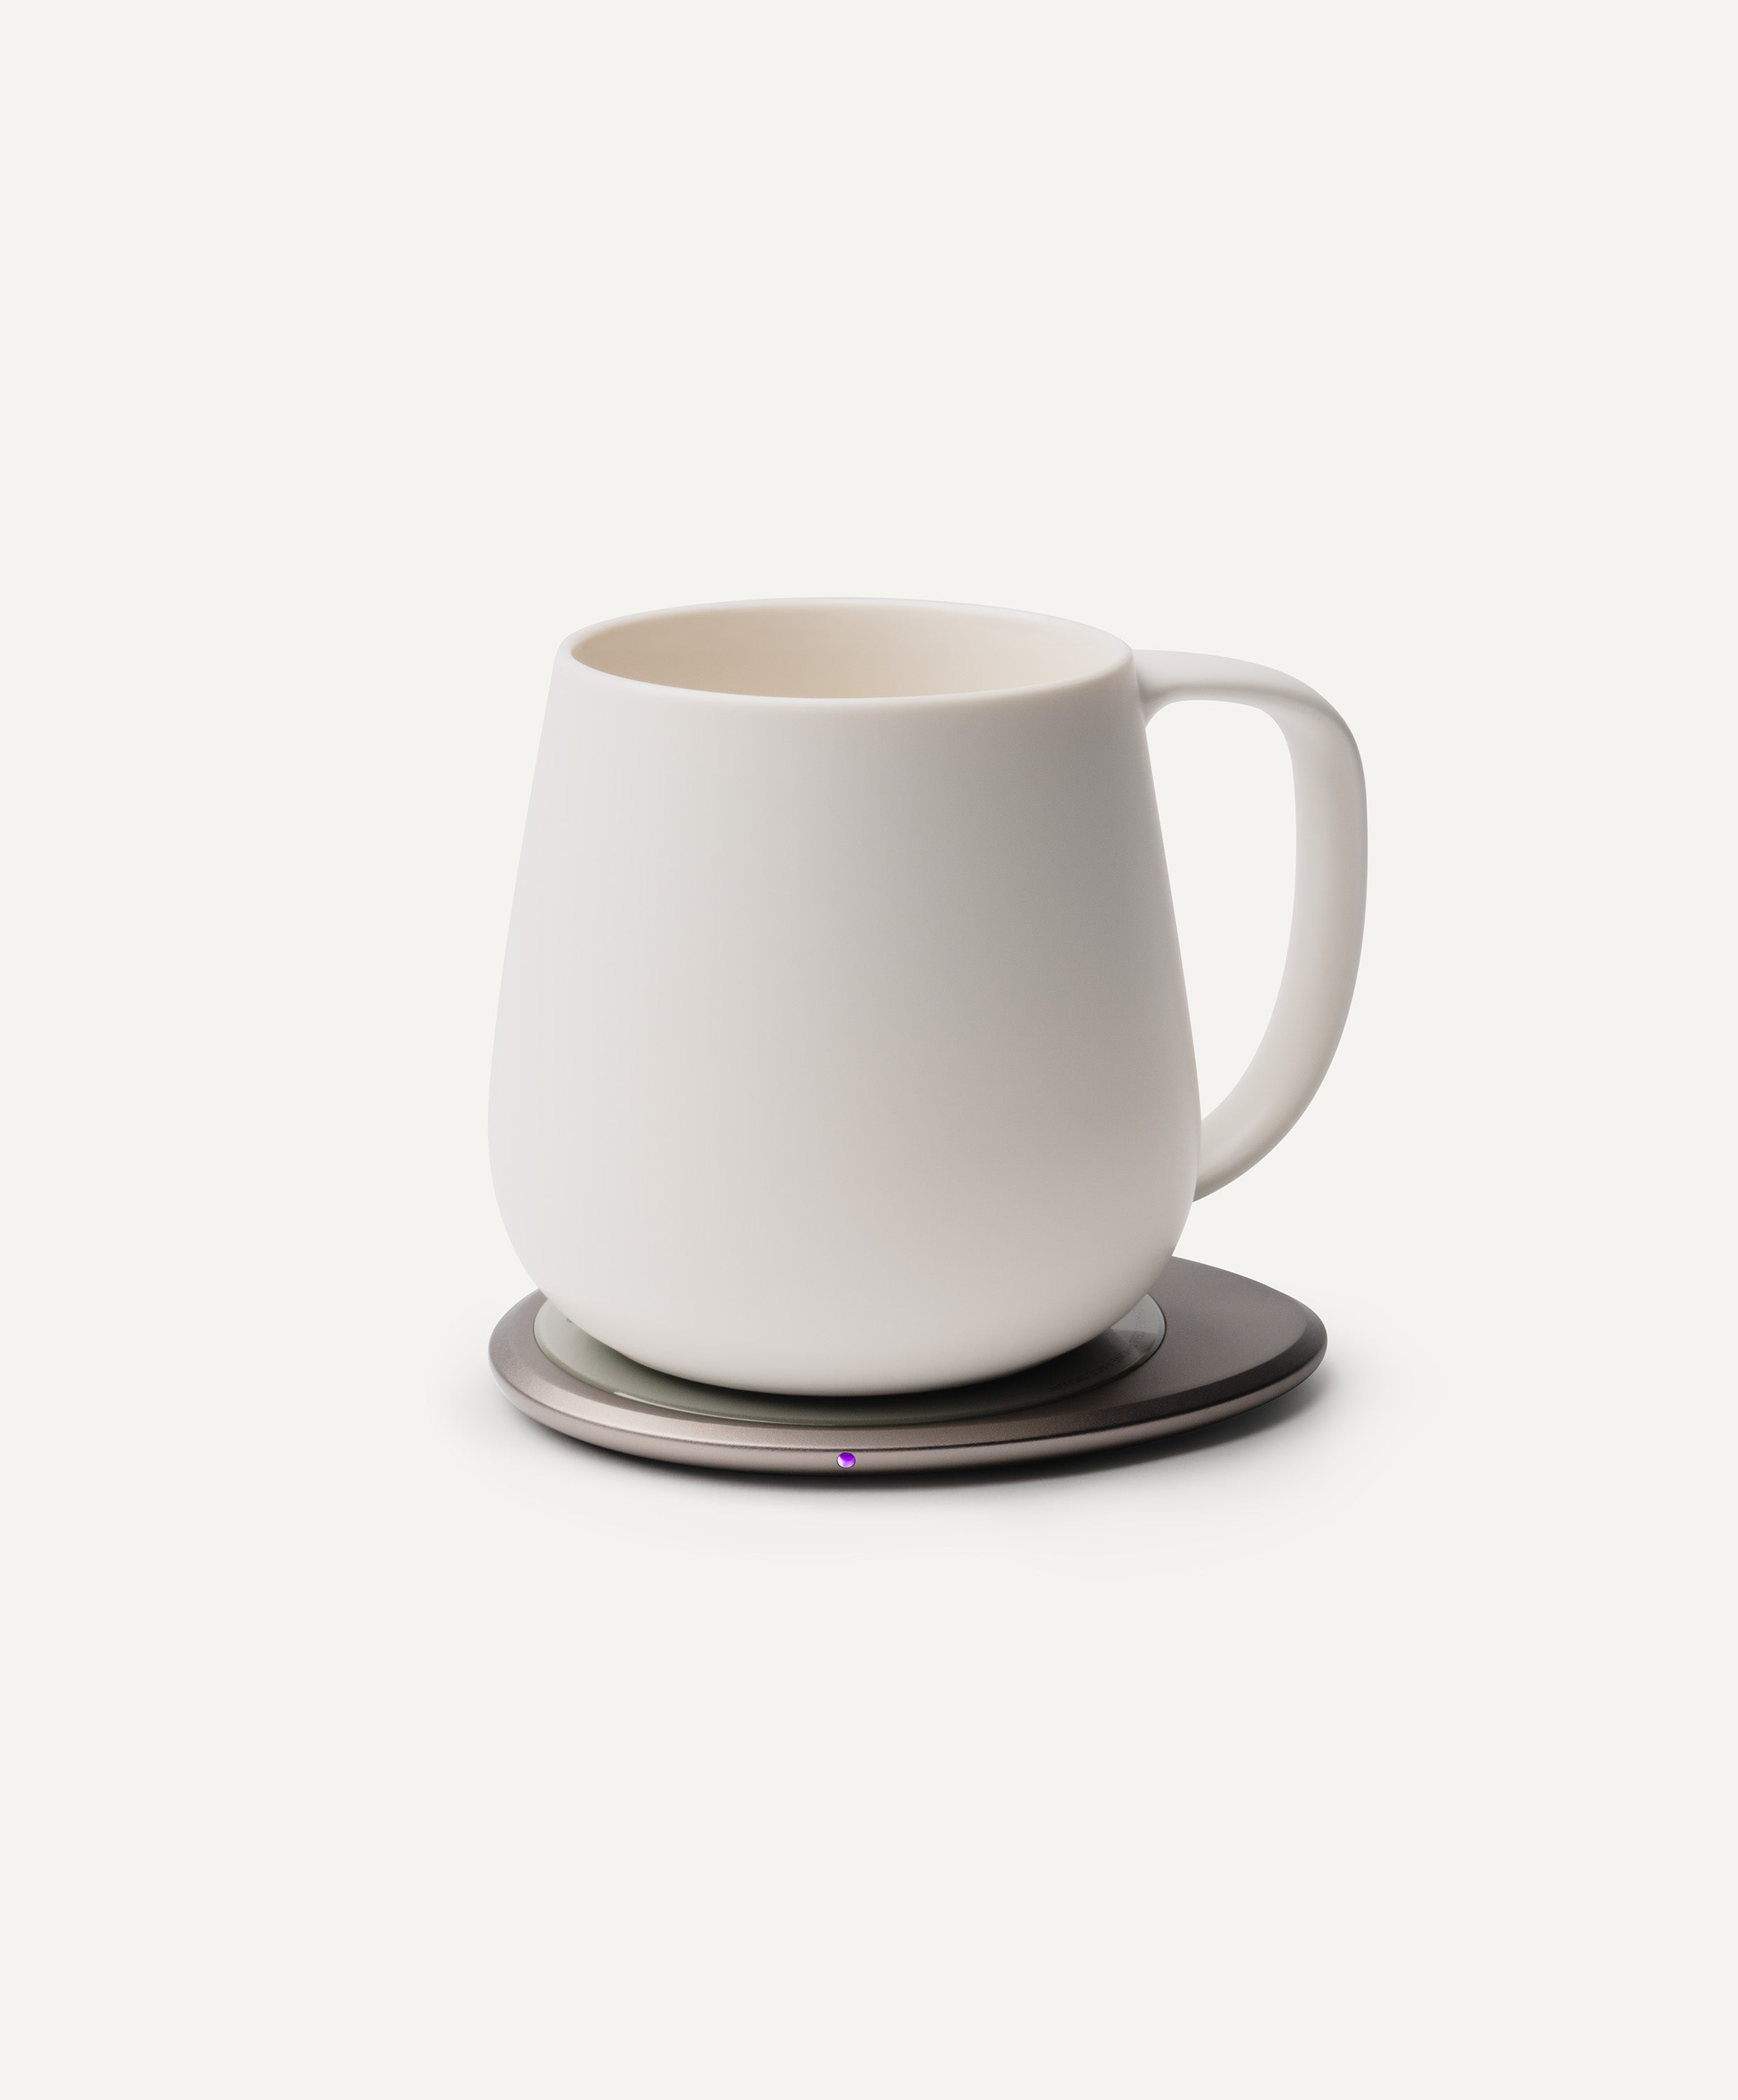 Ui+ Self-heating Mug Set - Jasmine White